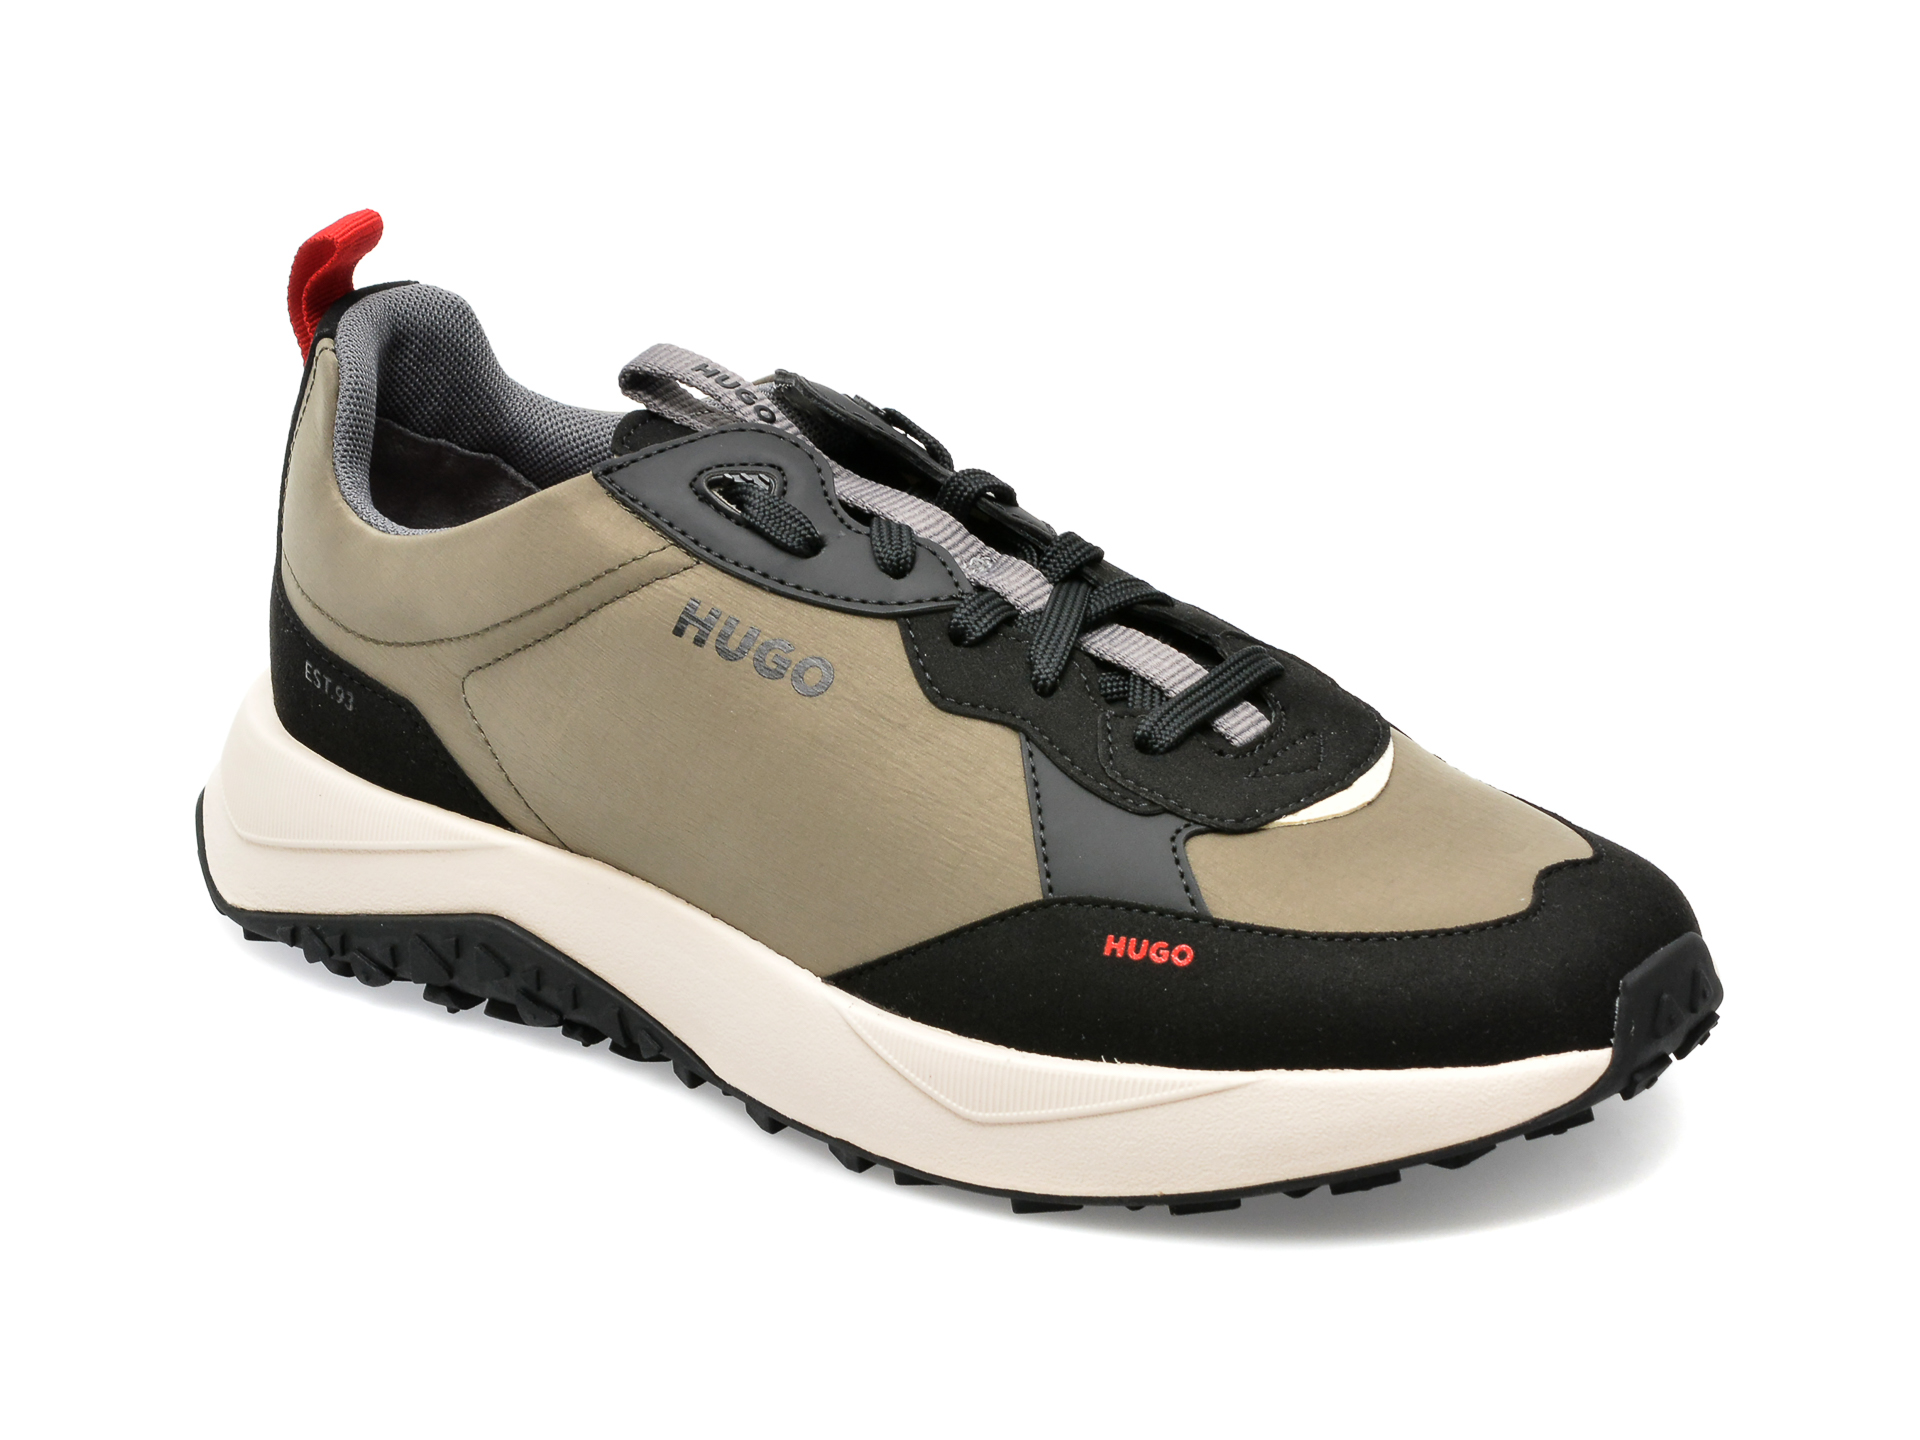 Pantofi HUGO kaki, 3146, din material textil si piele ecologica barbati 2023-09-21